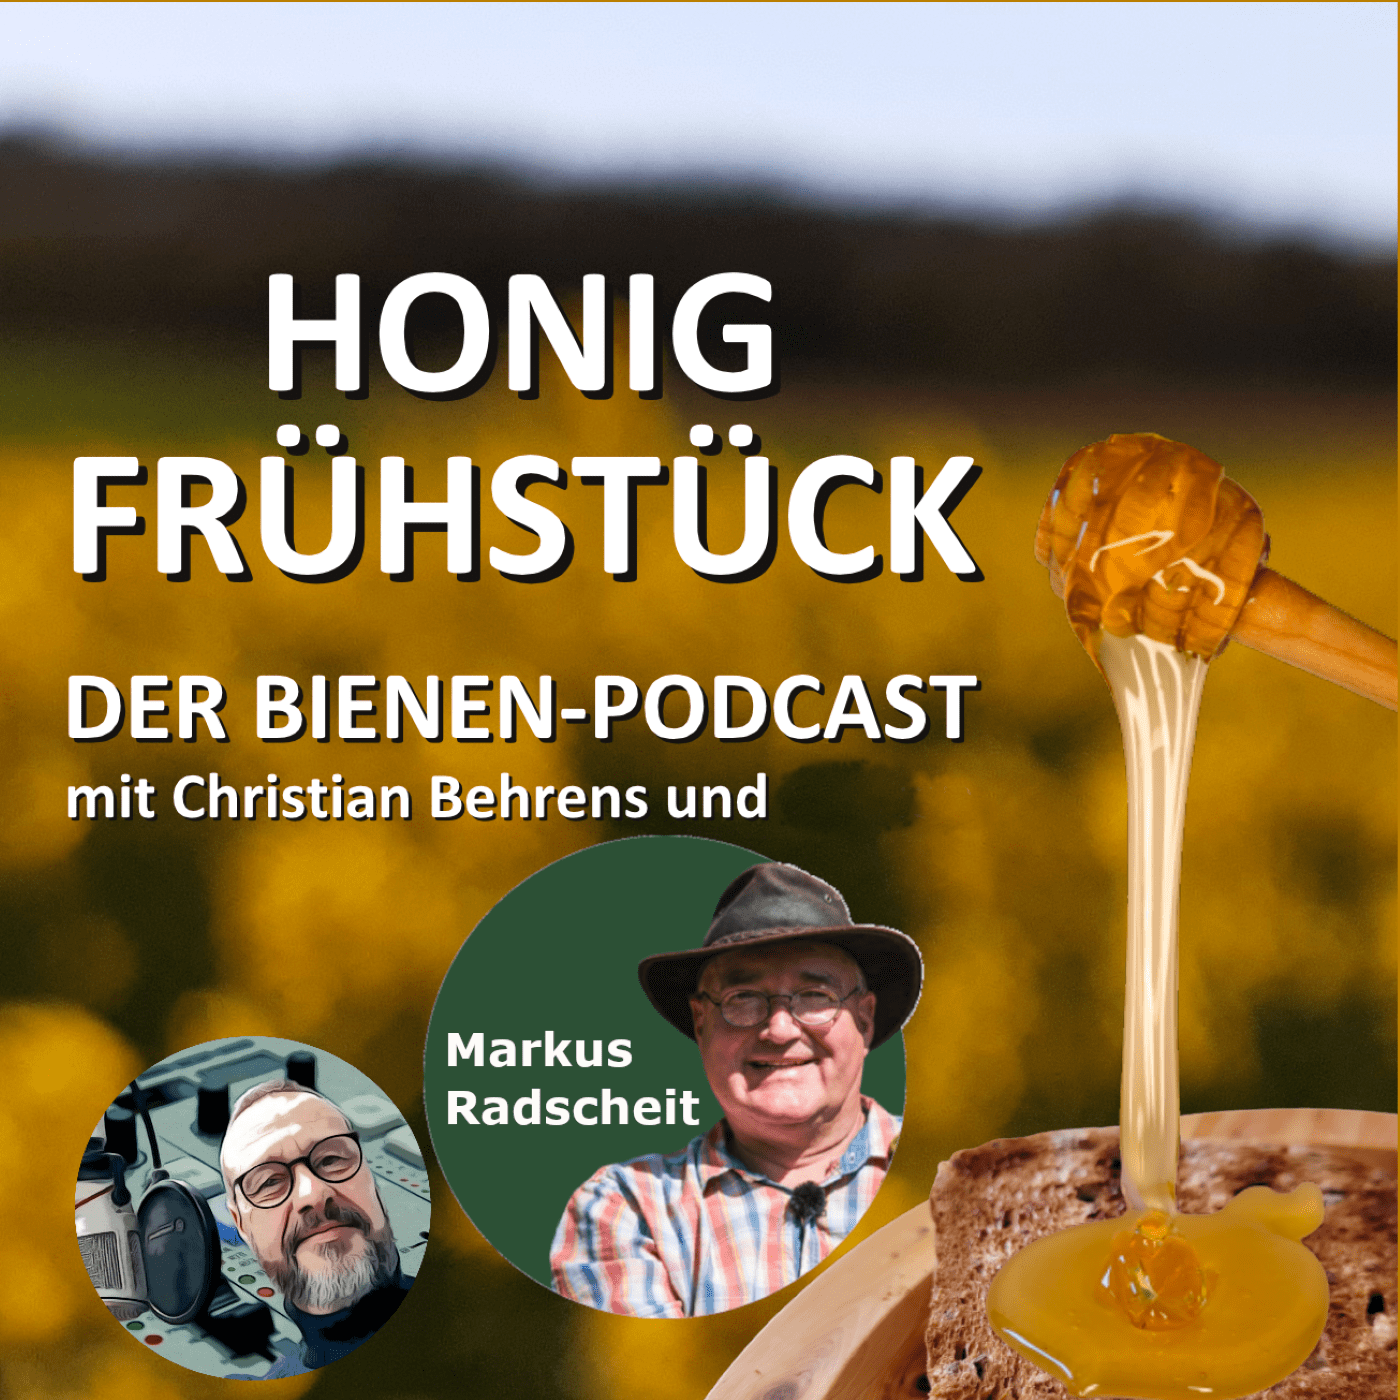 Honigfrühstück mit Markus Radscheit - Botaniker, Imker und Youtuber